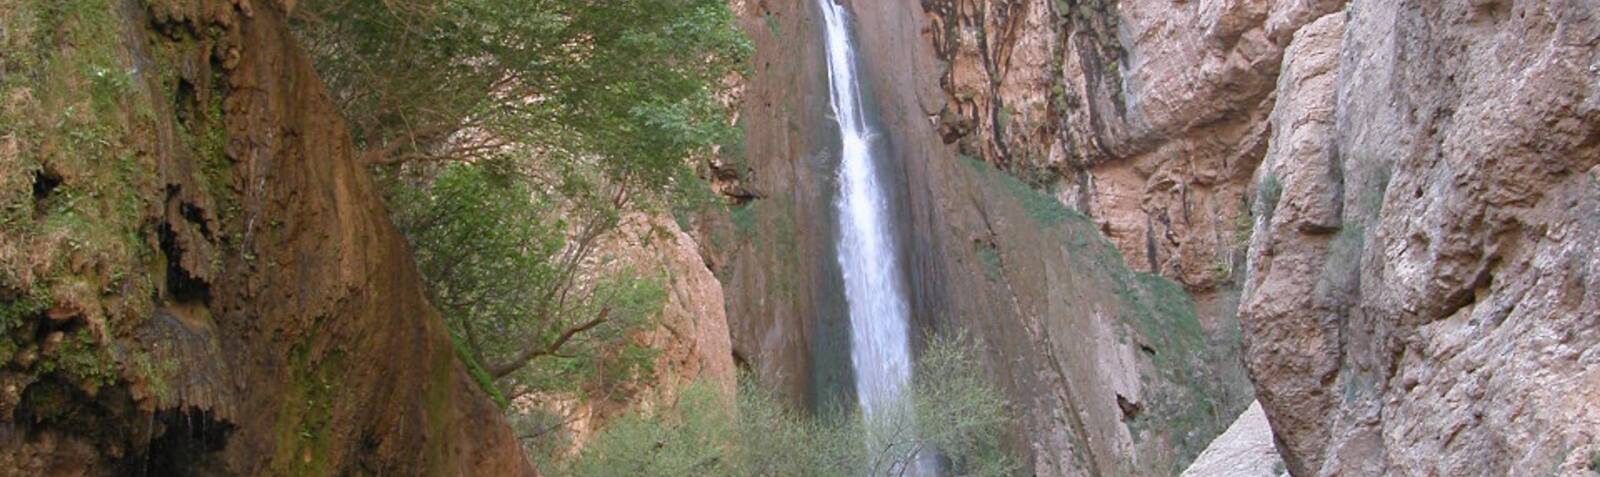 Водопад Пиран (Рижао)